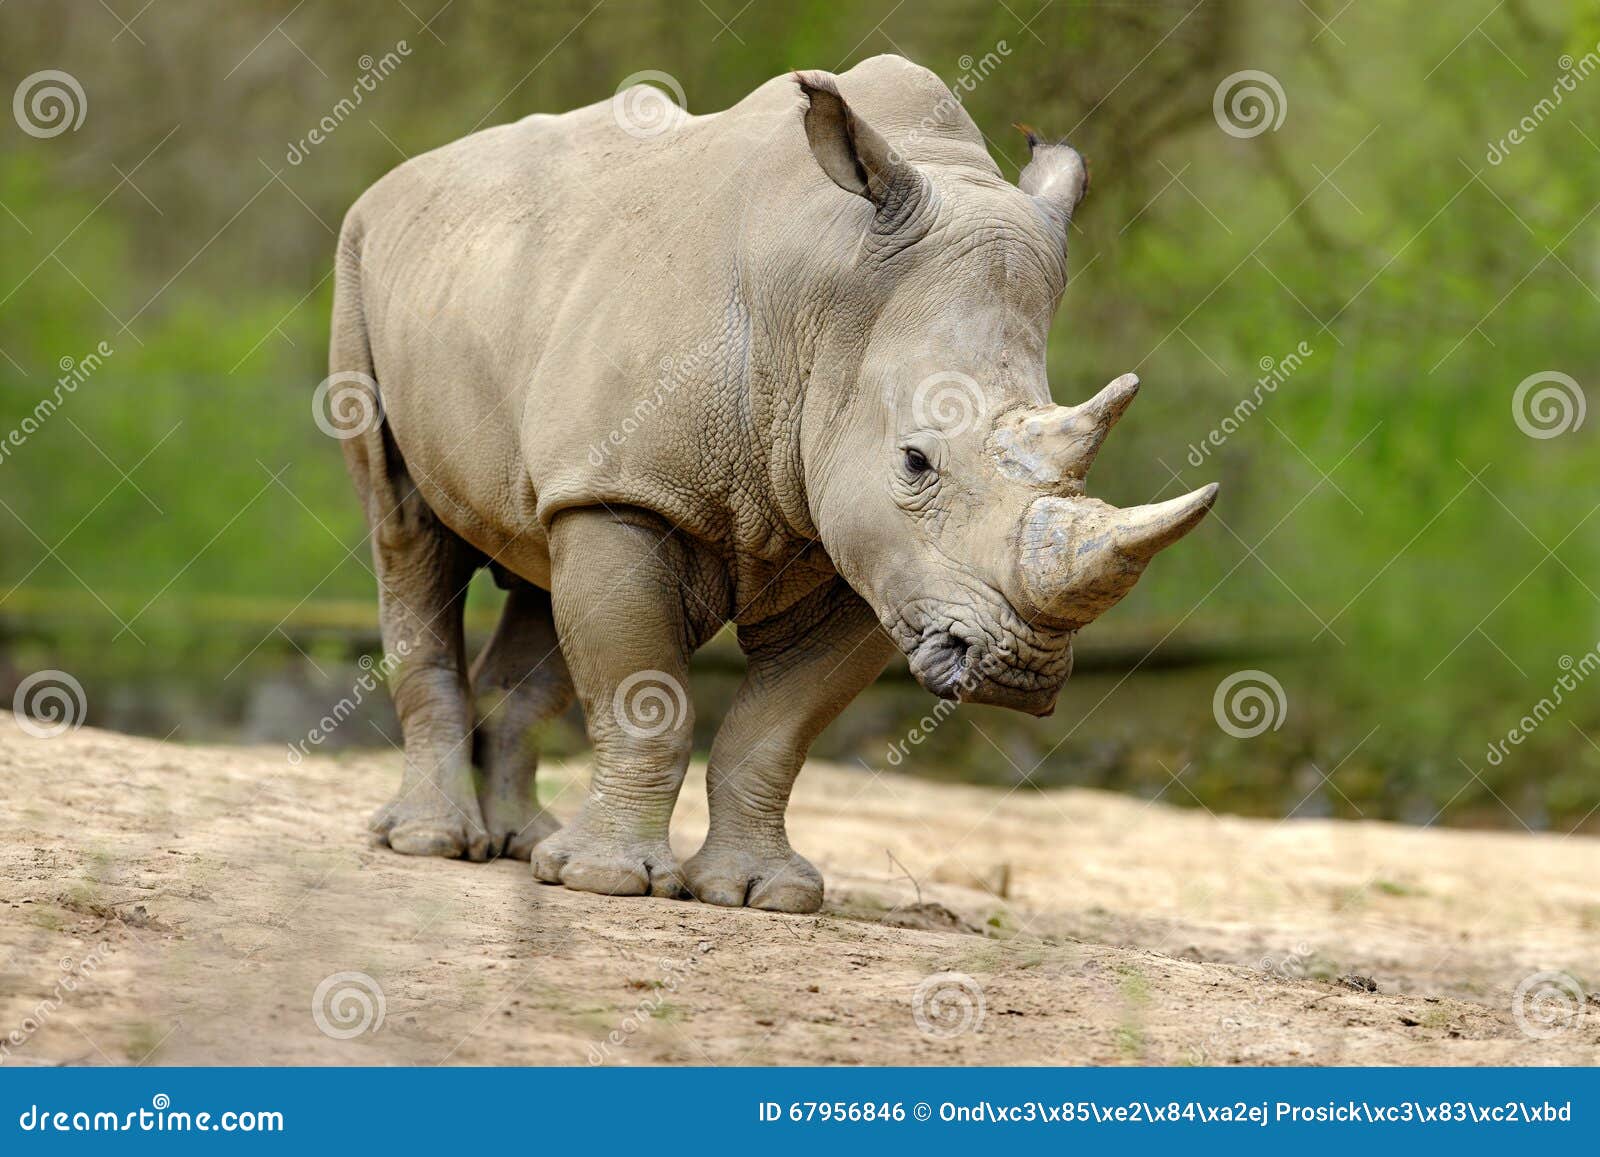 white rhinoceros, ceratotherium simum, with big horn, africa